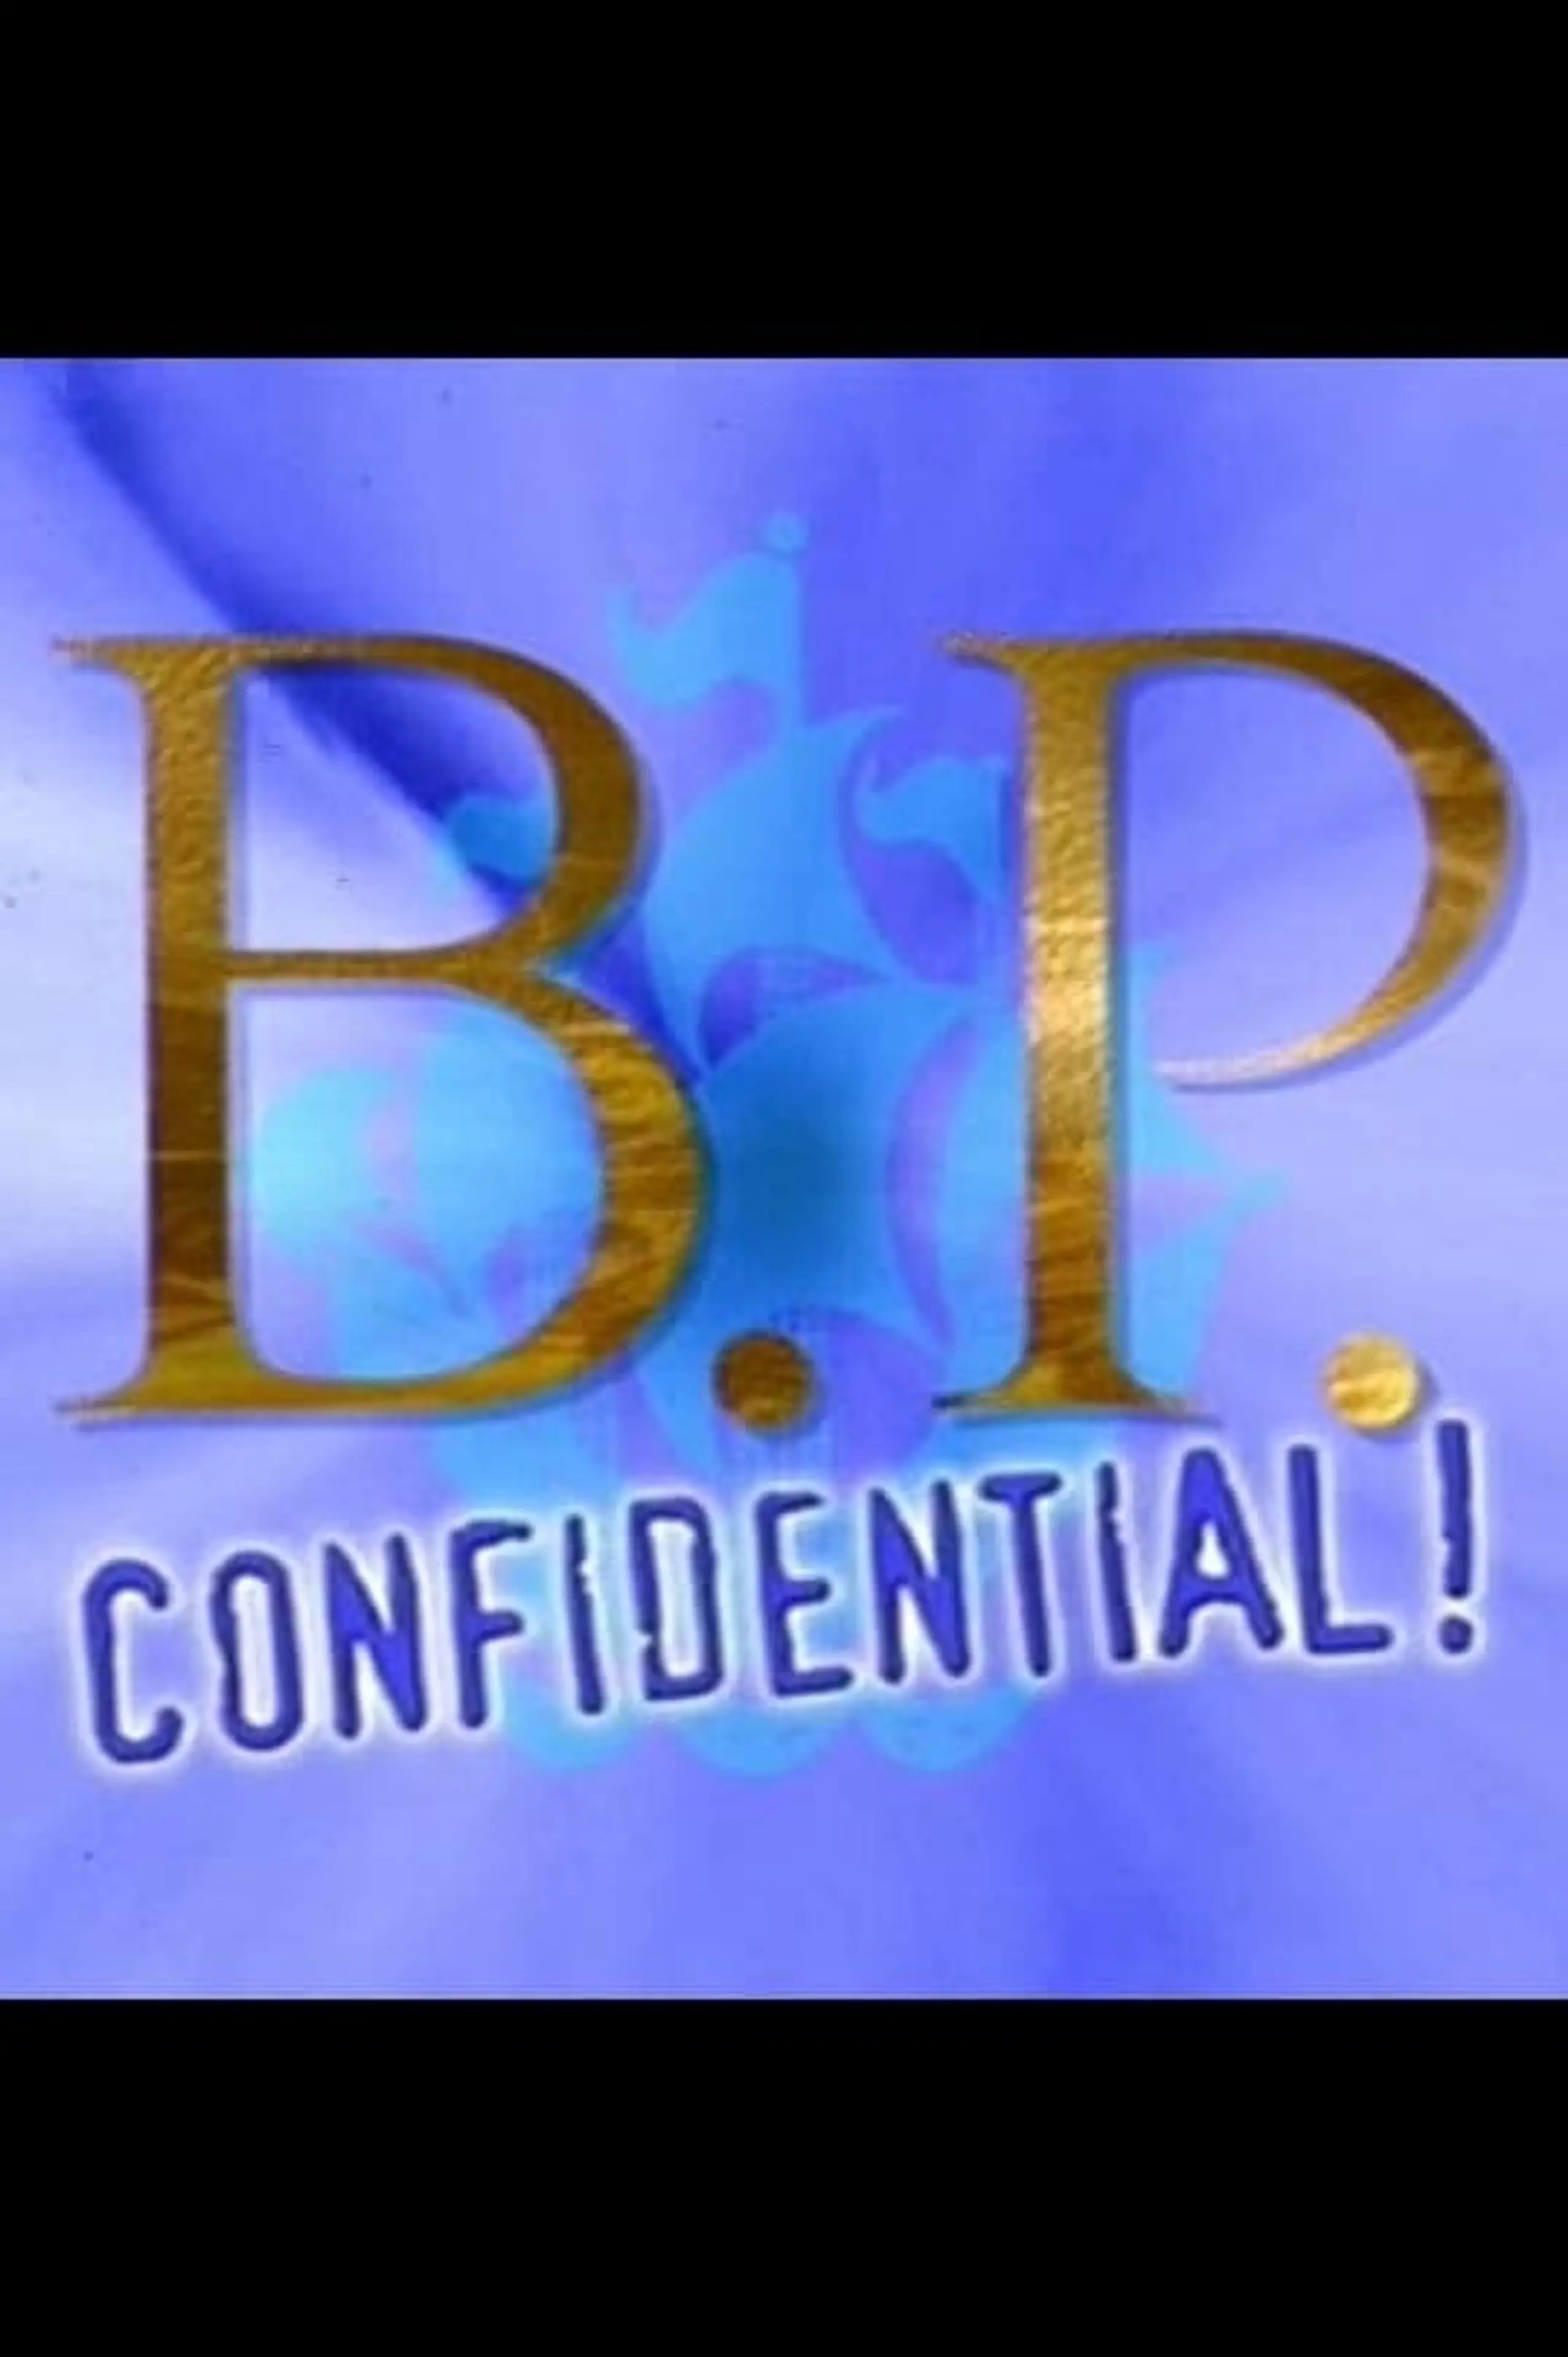 B.P. Confidential